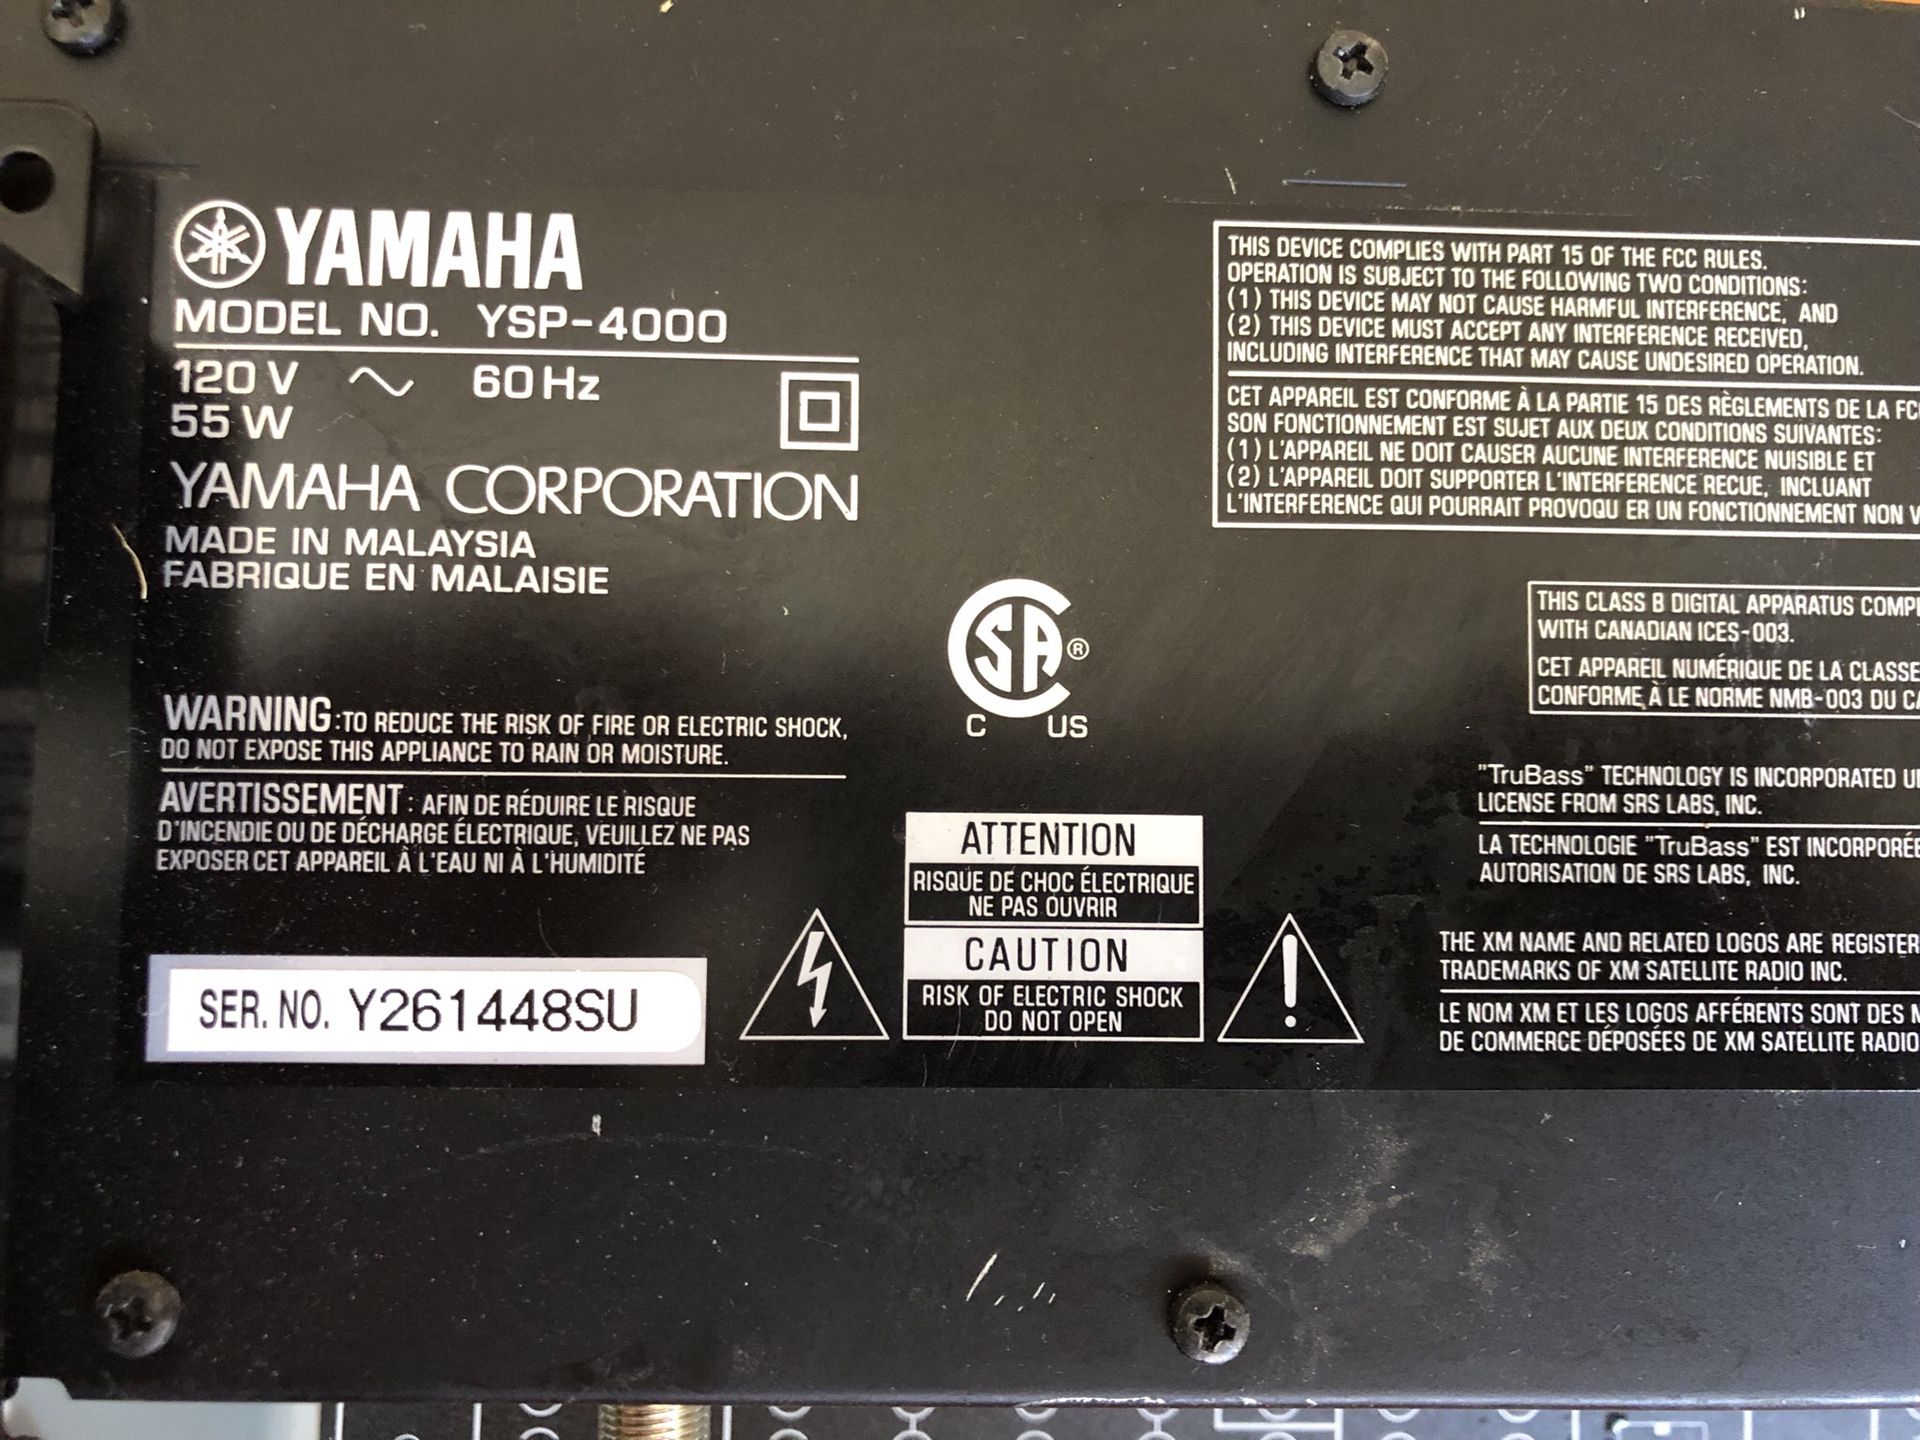 Yamaha YSP-4000 Hi-End Digital Sound Projector SoundBar for Sale